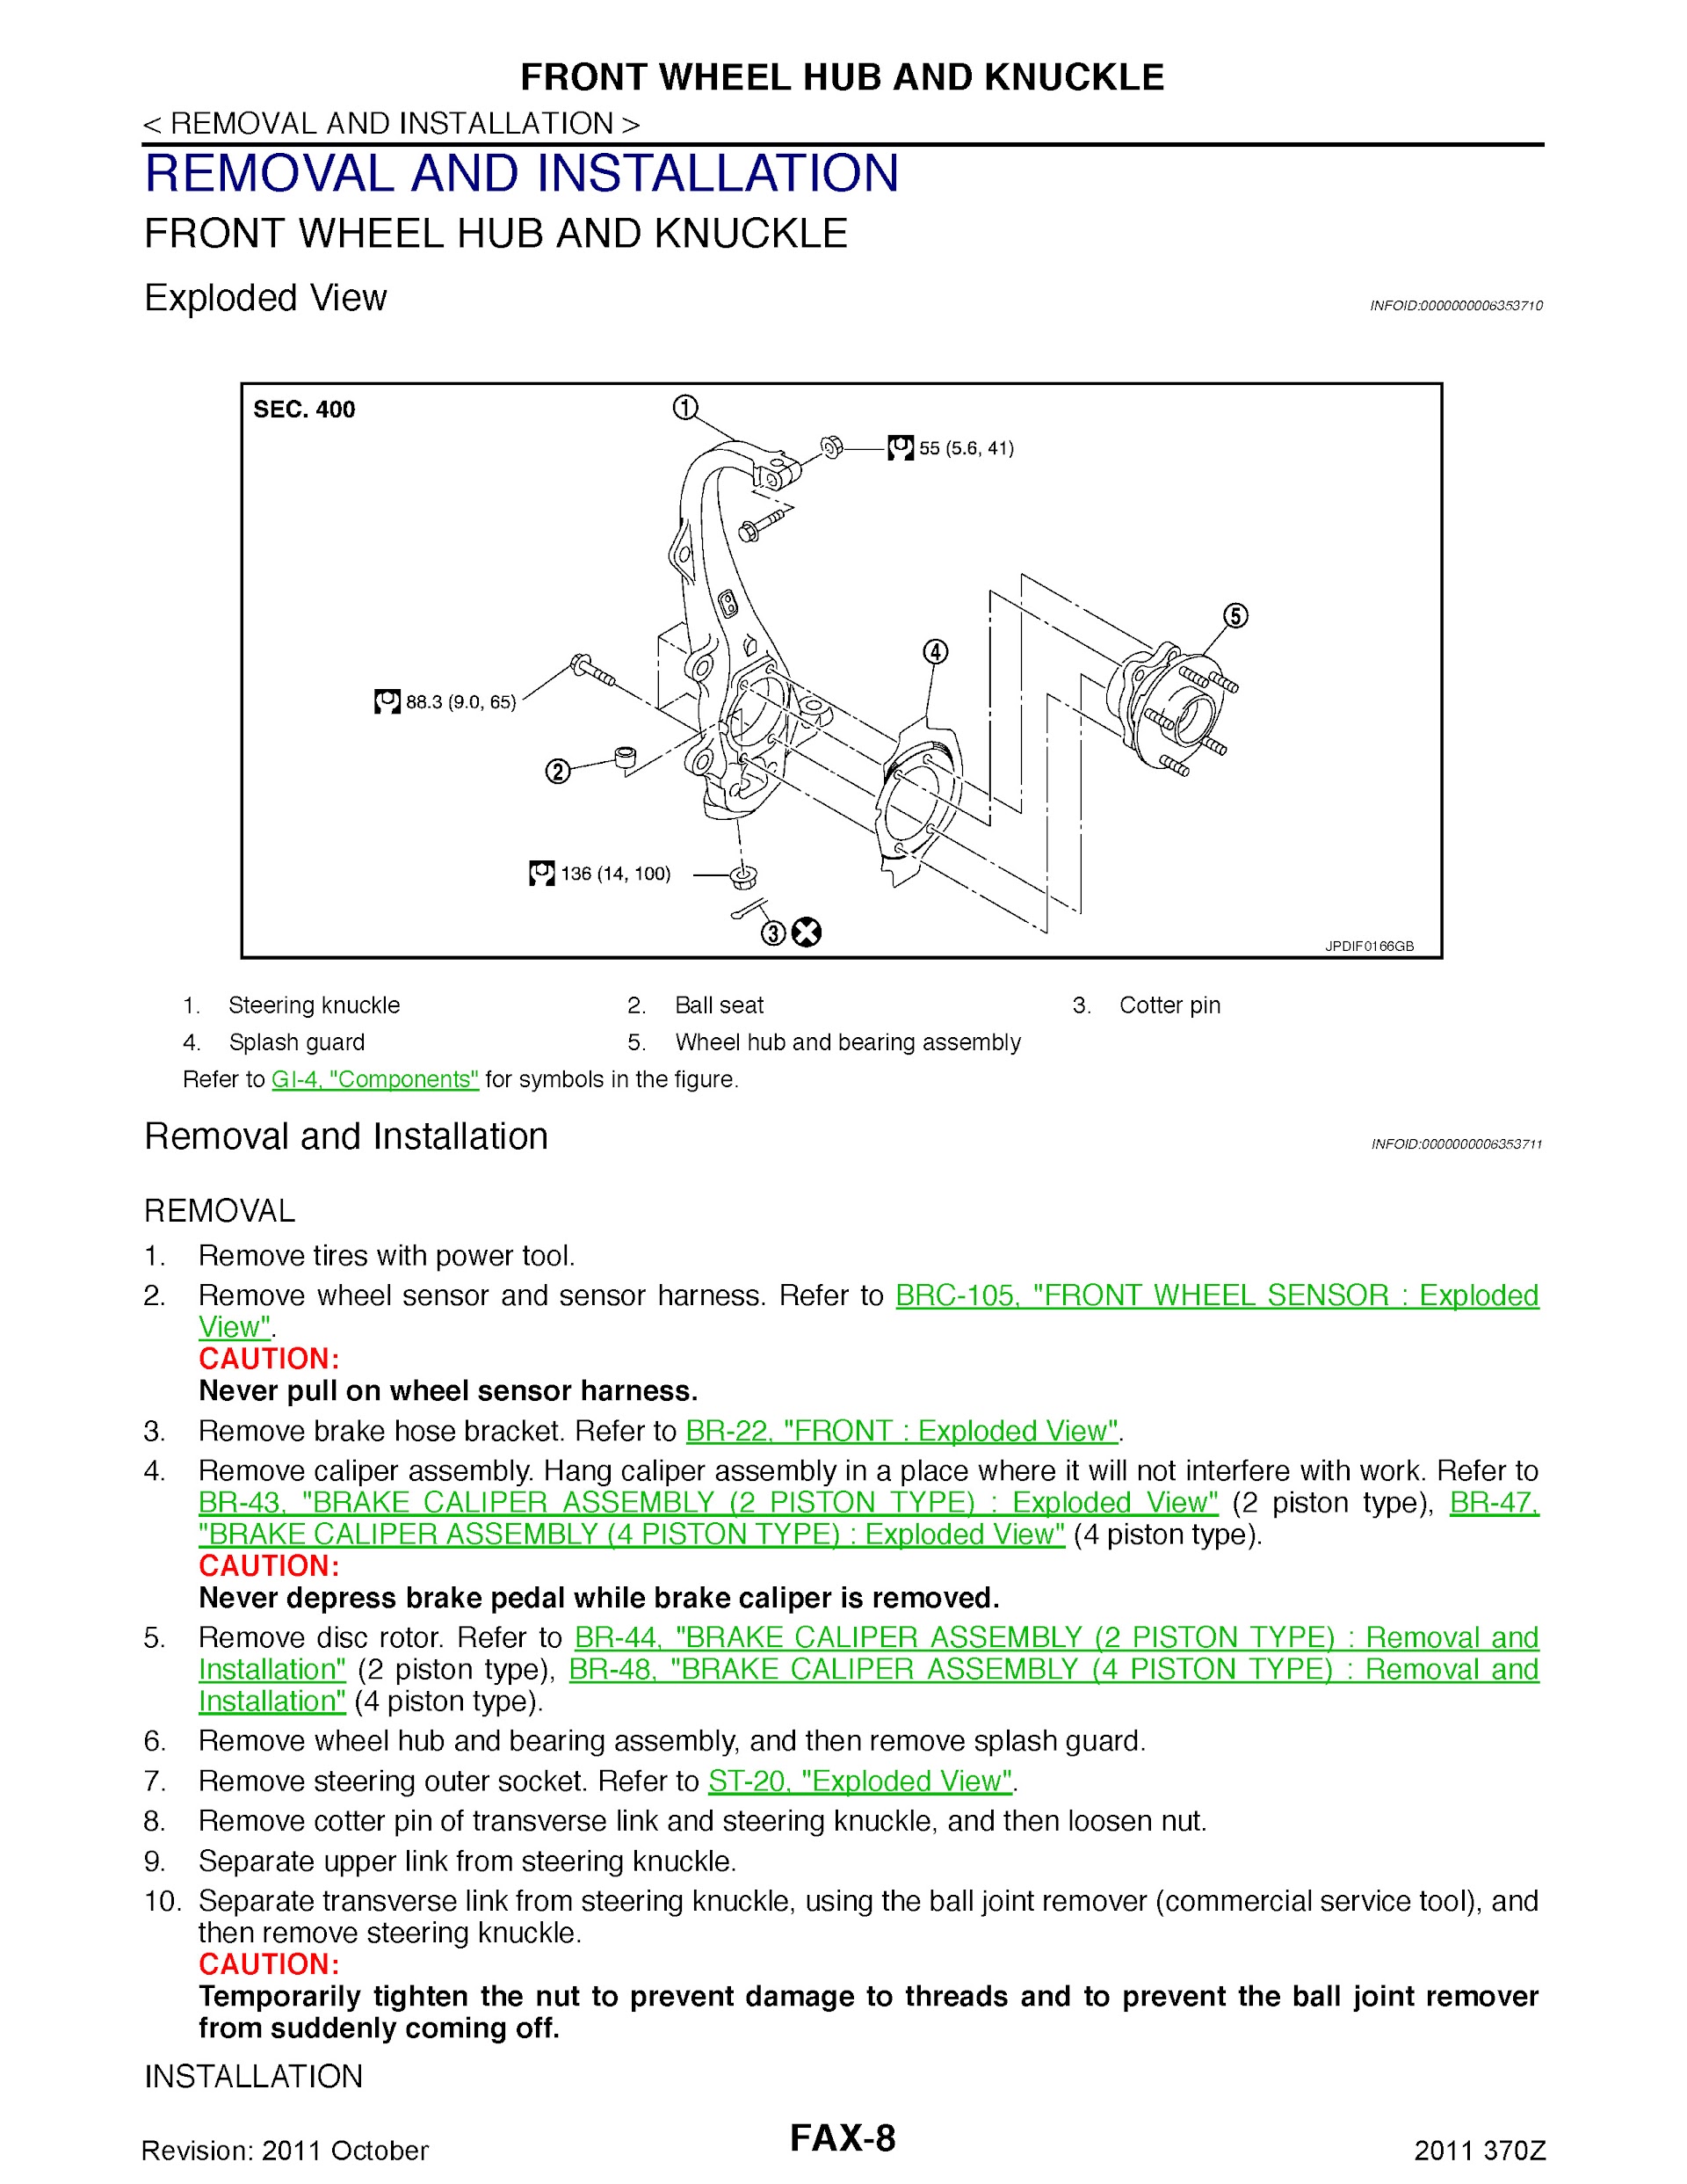 Download 2011 Nissan 370Z Repair Manual.